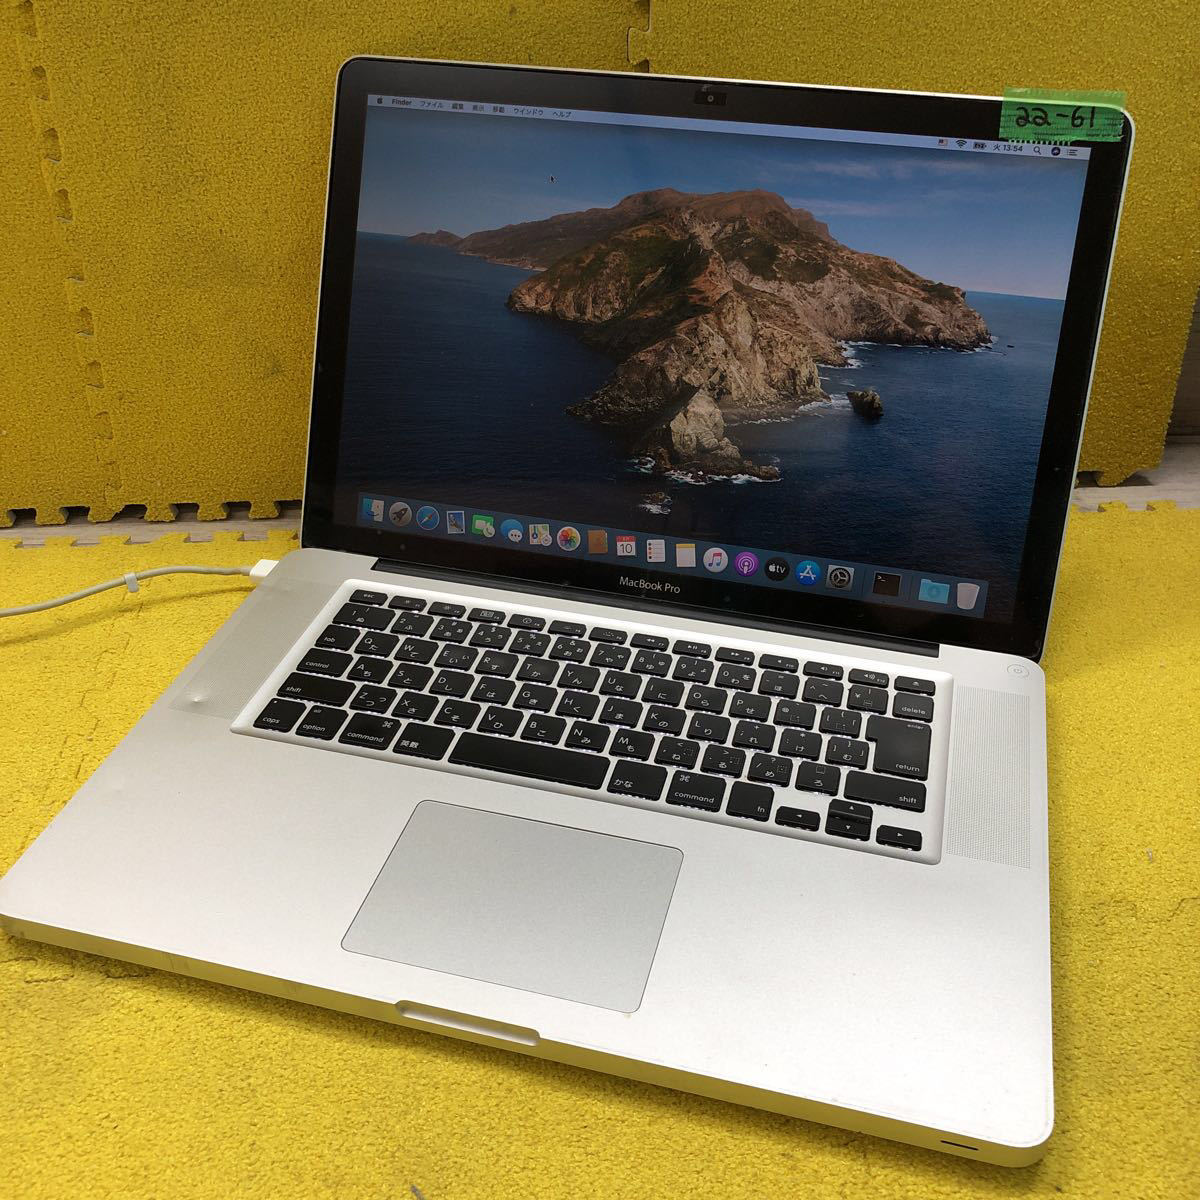 ヤフオク! -「macbook pro a1286」(Mac) (パソコン)の落札相場・落札価格